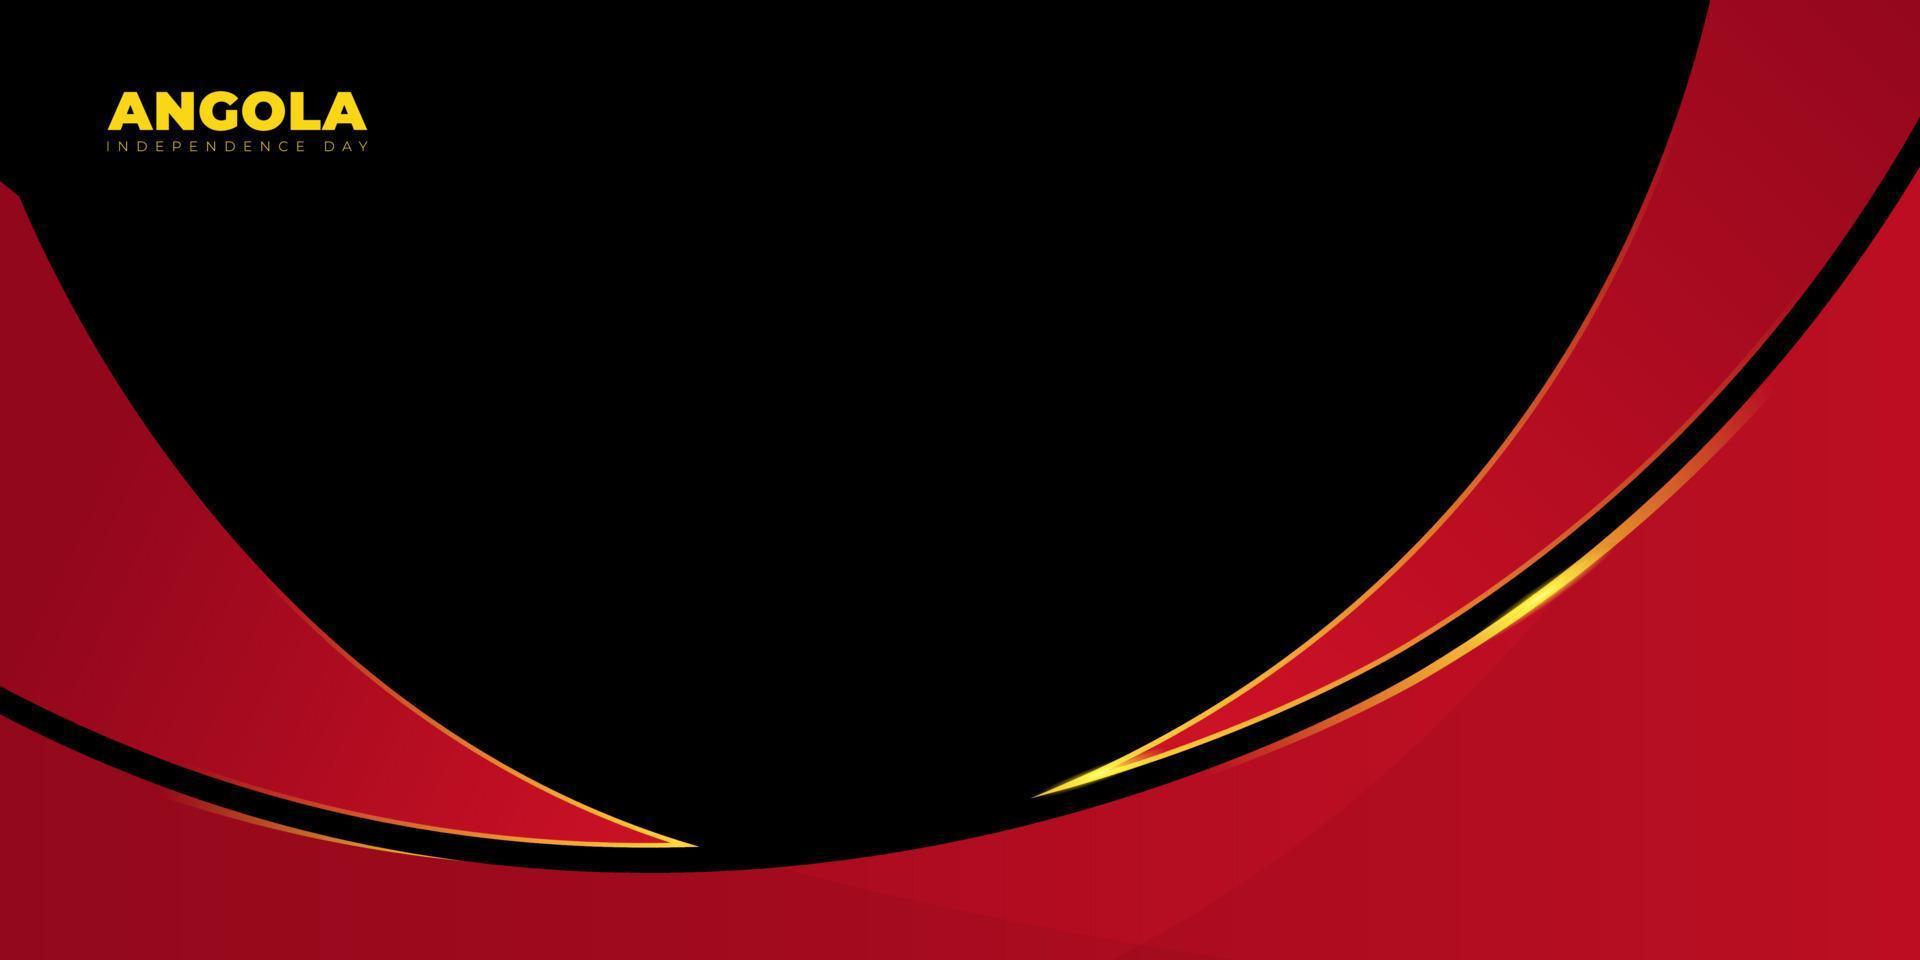 diseño abstracto rojo y negro con fondo negro. antecedentes del día de la independencia de angola. vector